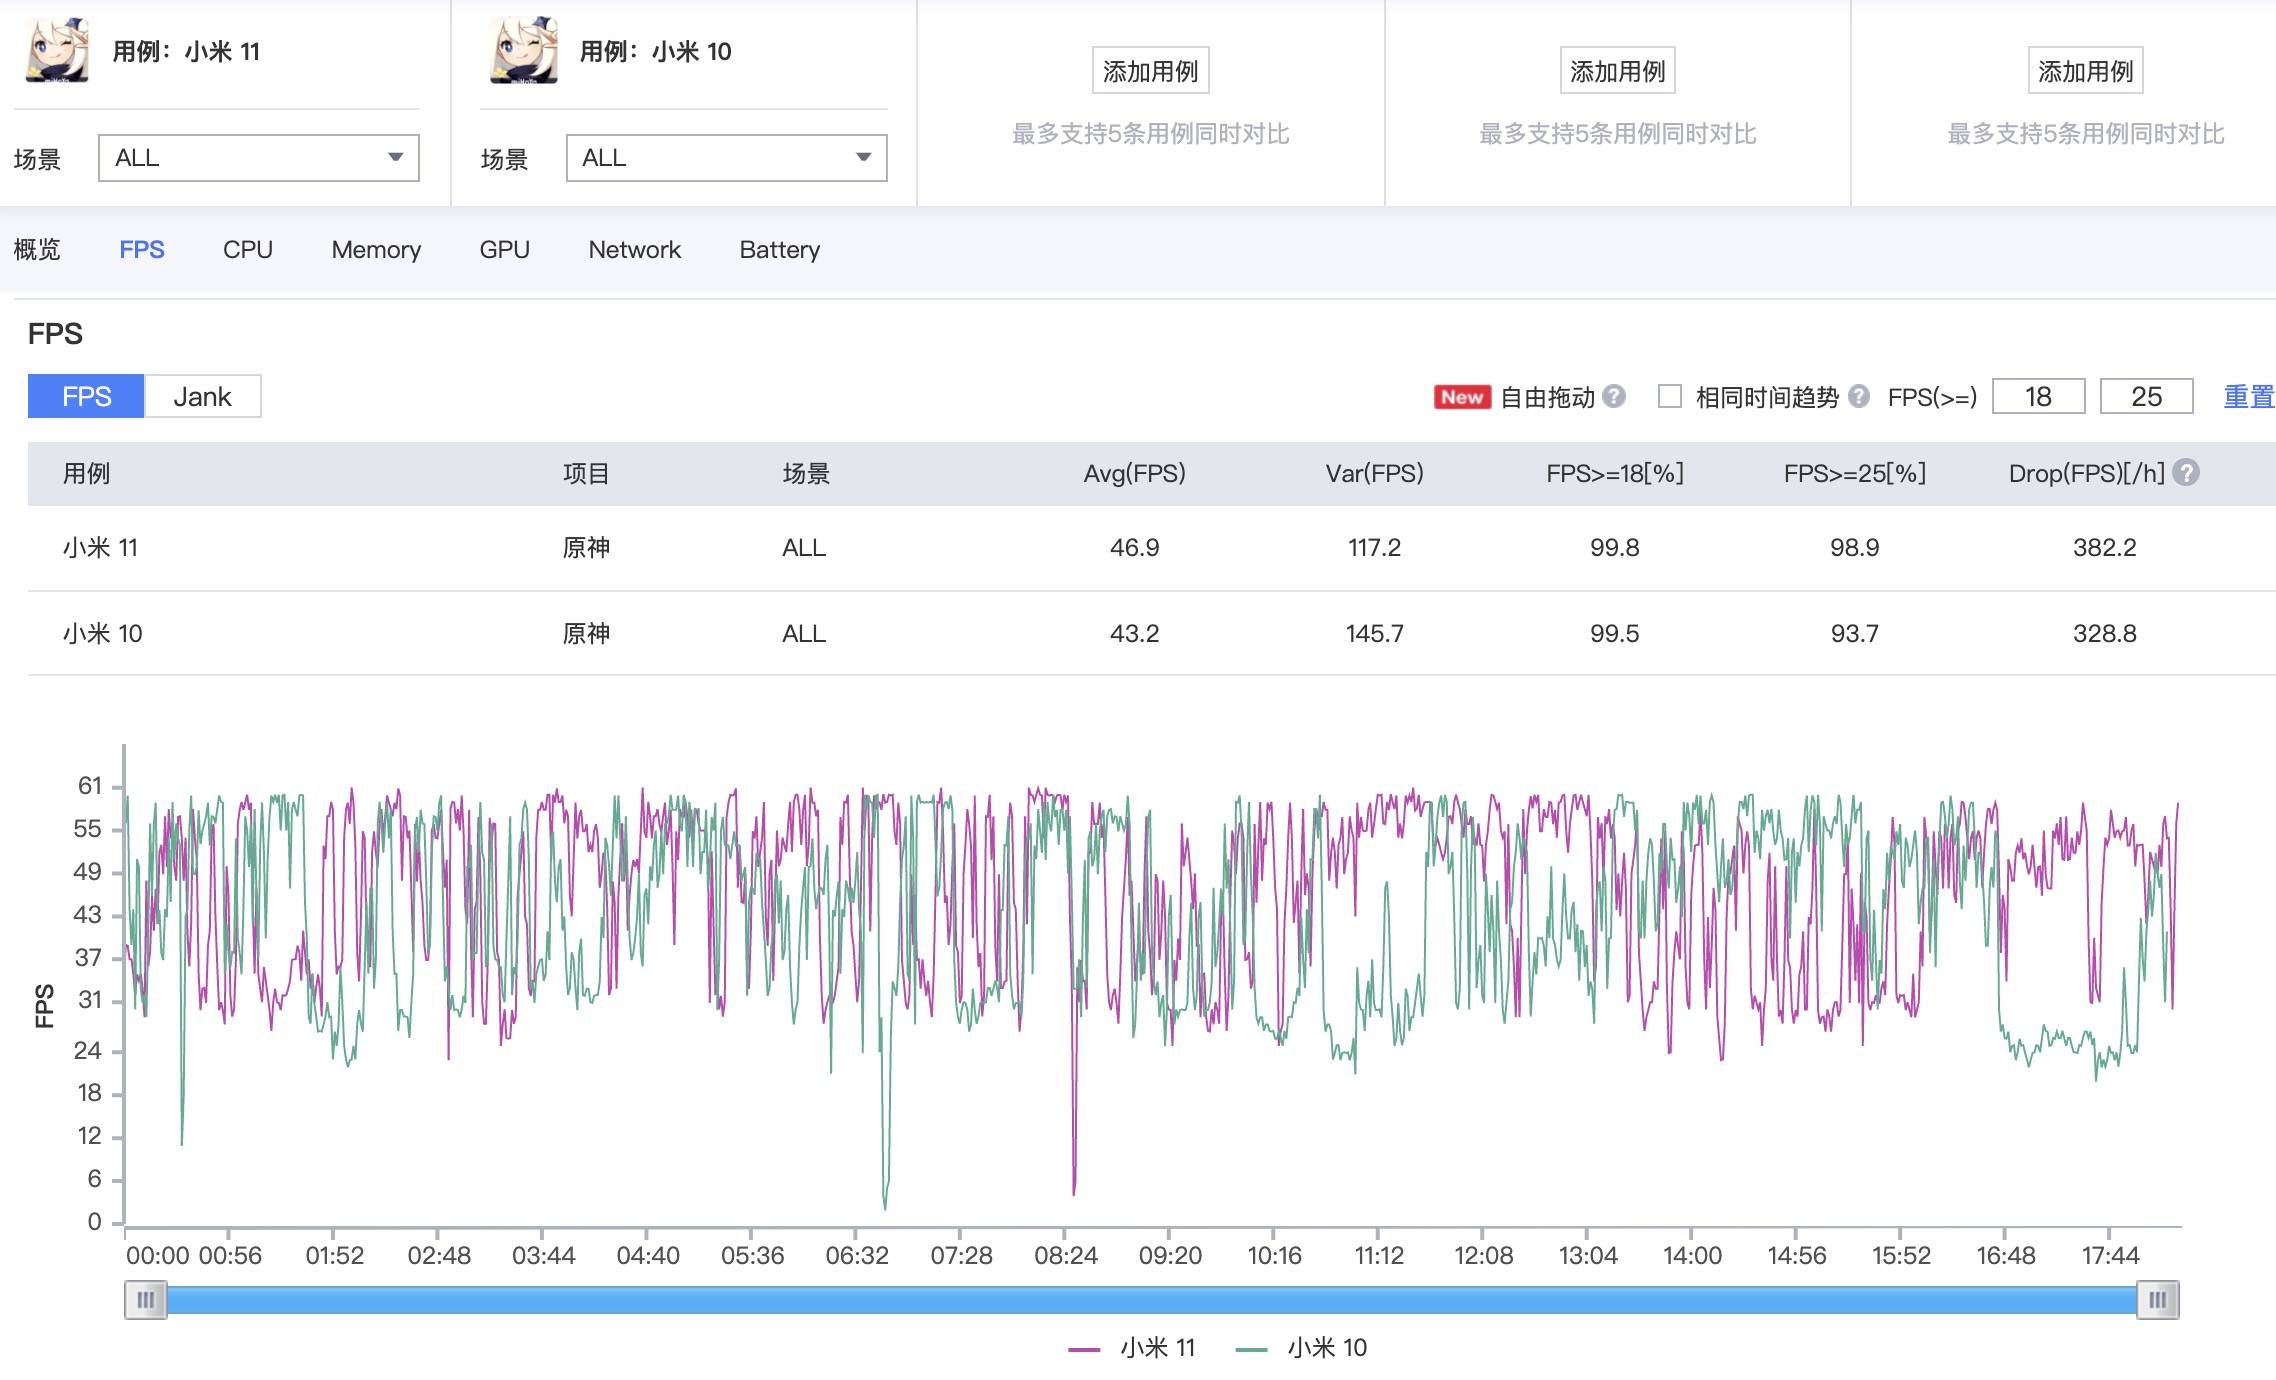 yuanshen - Come sono le prestazioni di Snapdragon 888? Abbiamo giocato per due giorni con Xiaomi Mi 11